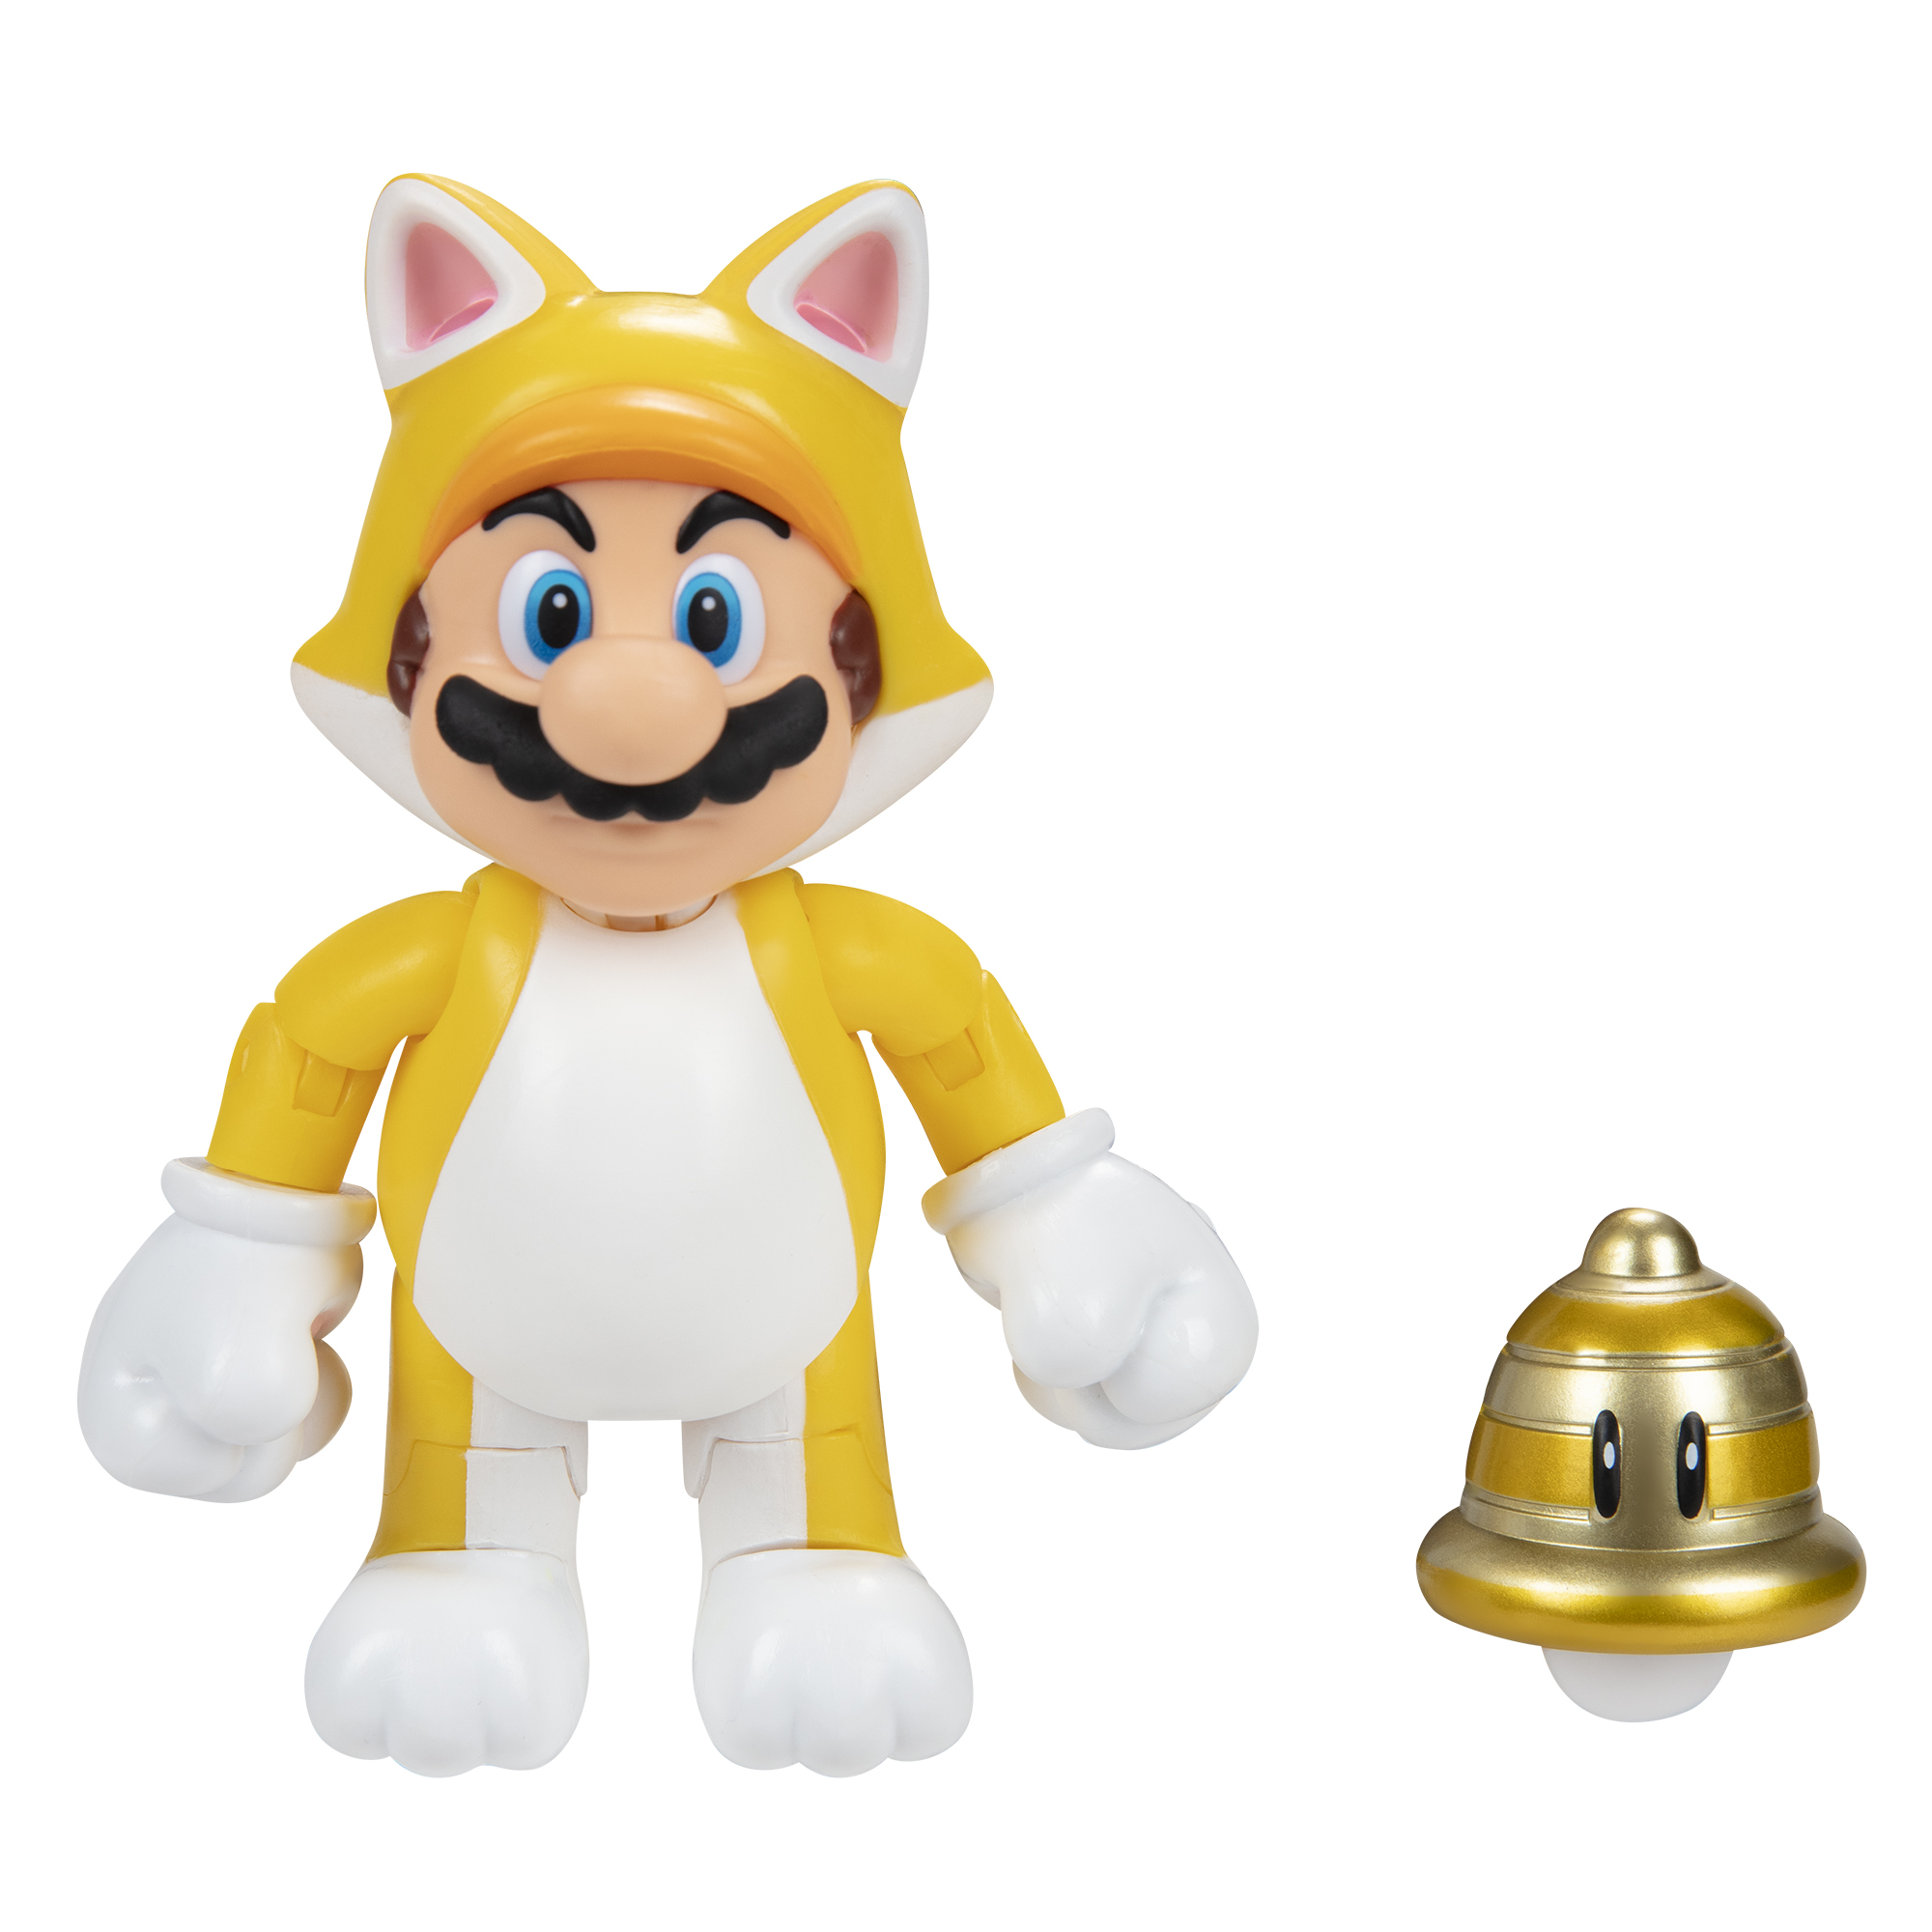 SUPER MARIO Nintendo Mario Superball, Cat Figur Mario with 10 Spielware Super cm